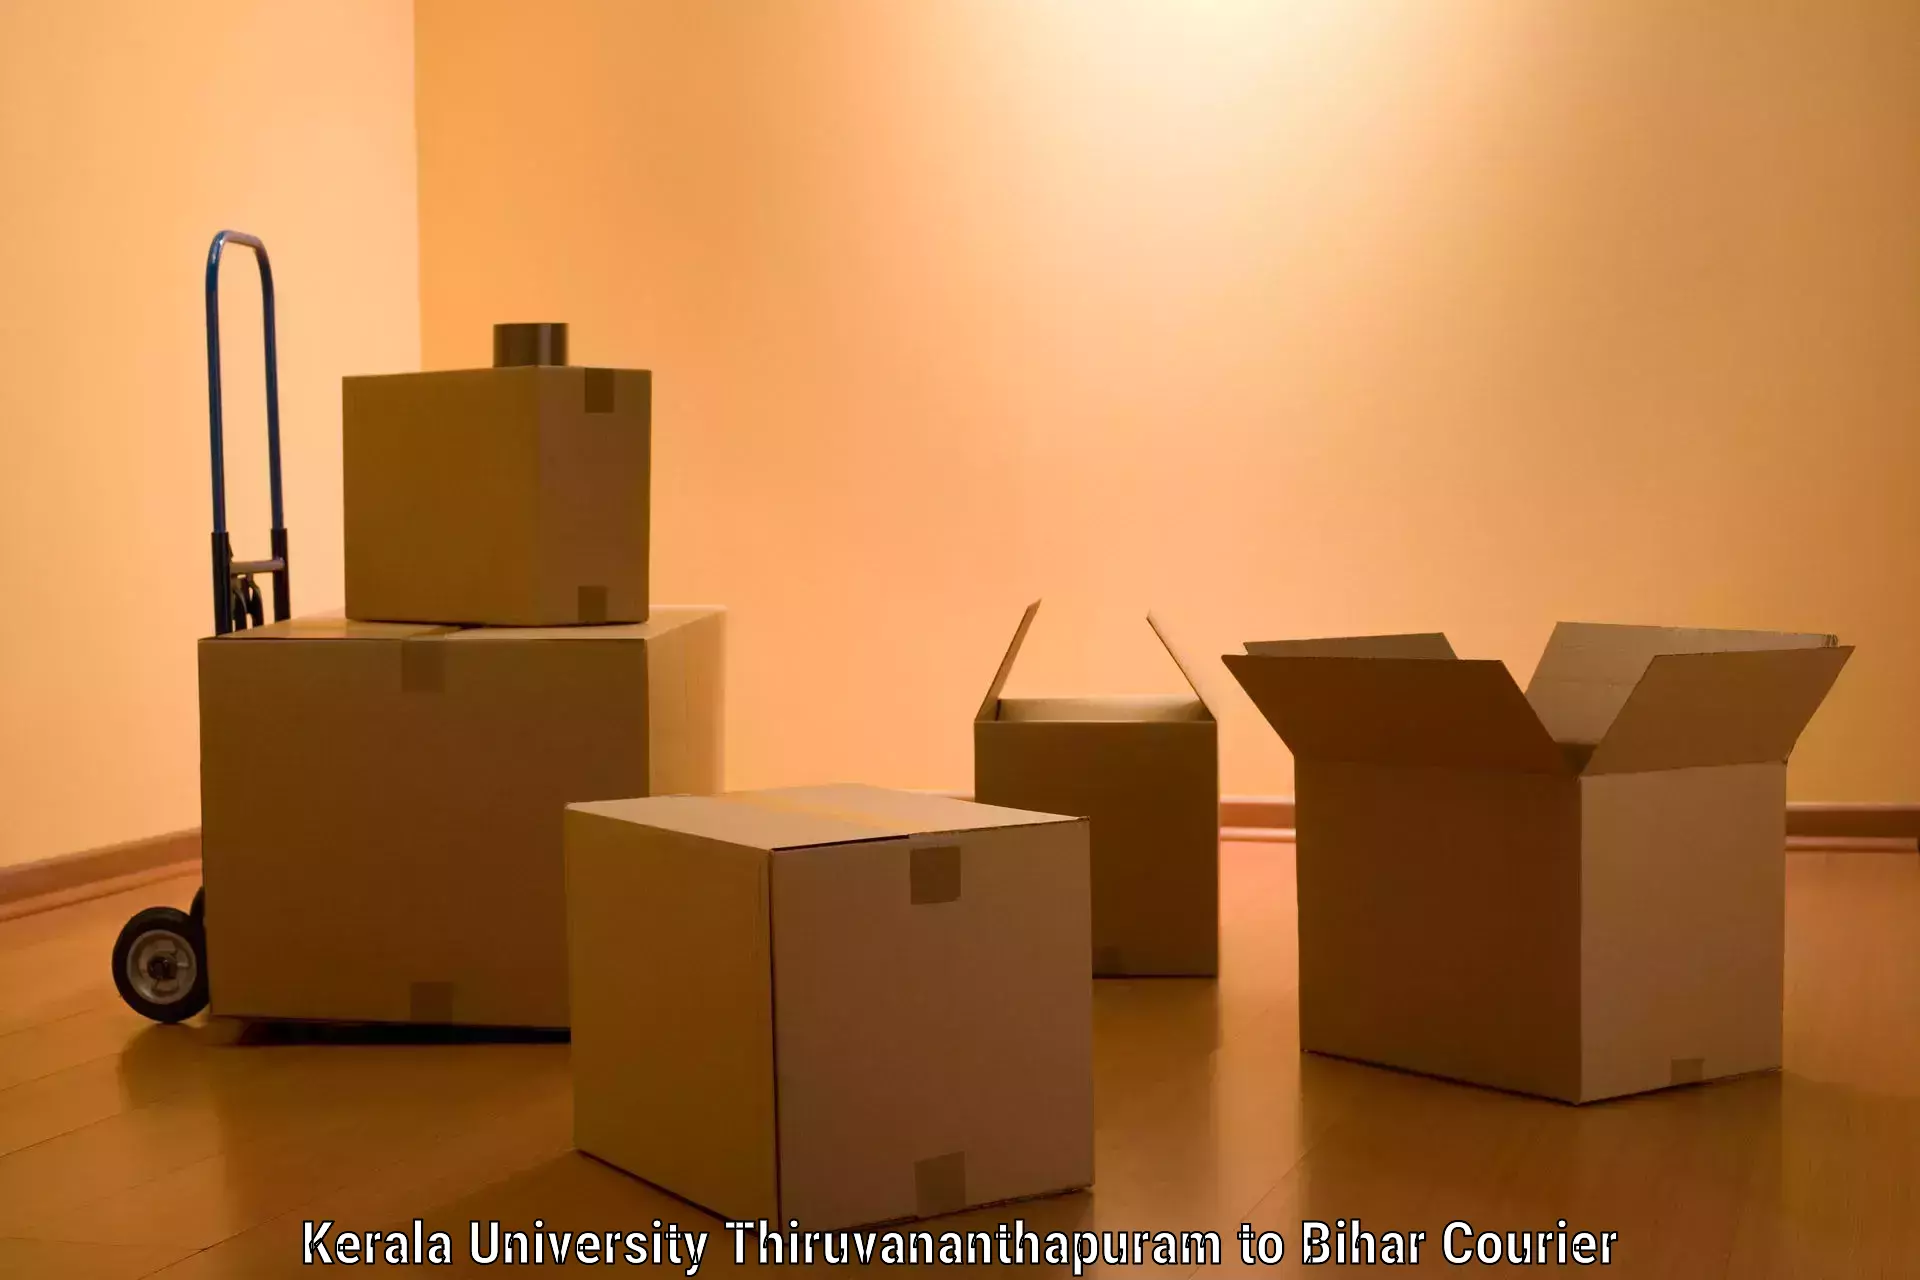 Stress-free furniture moving in Kerala University Thiruvananthapuram to Rohtas